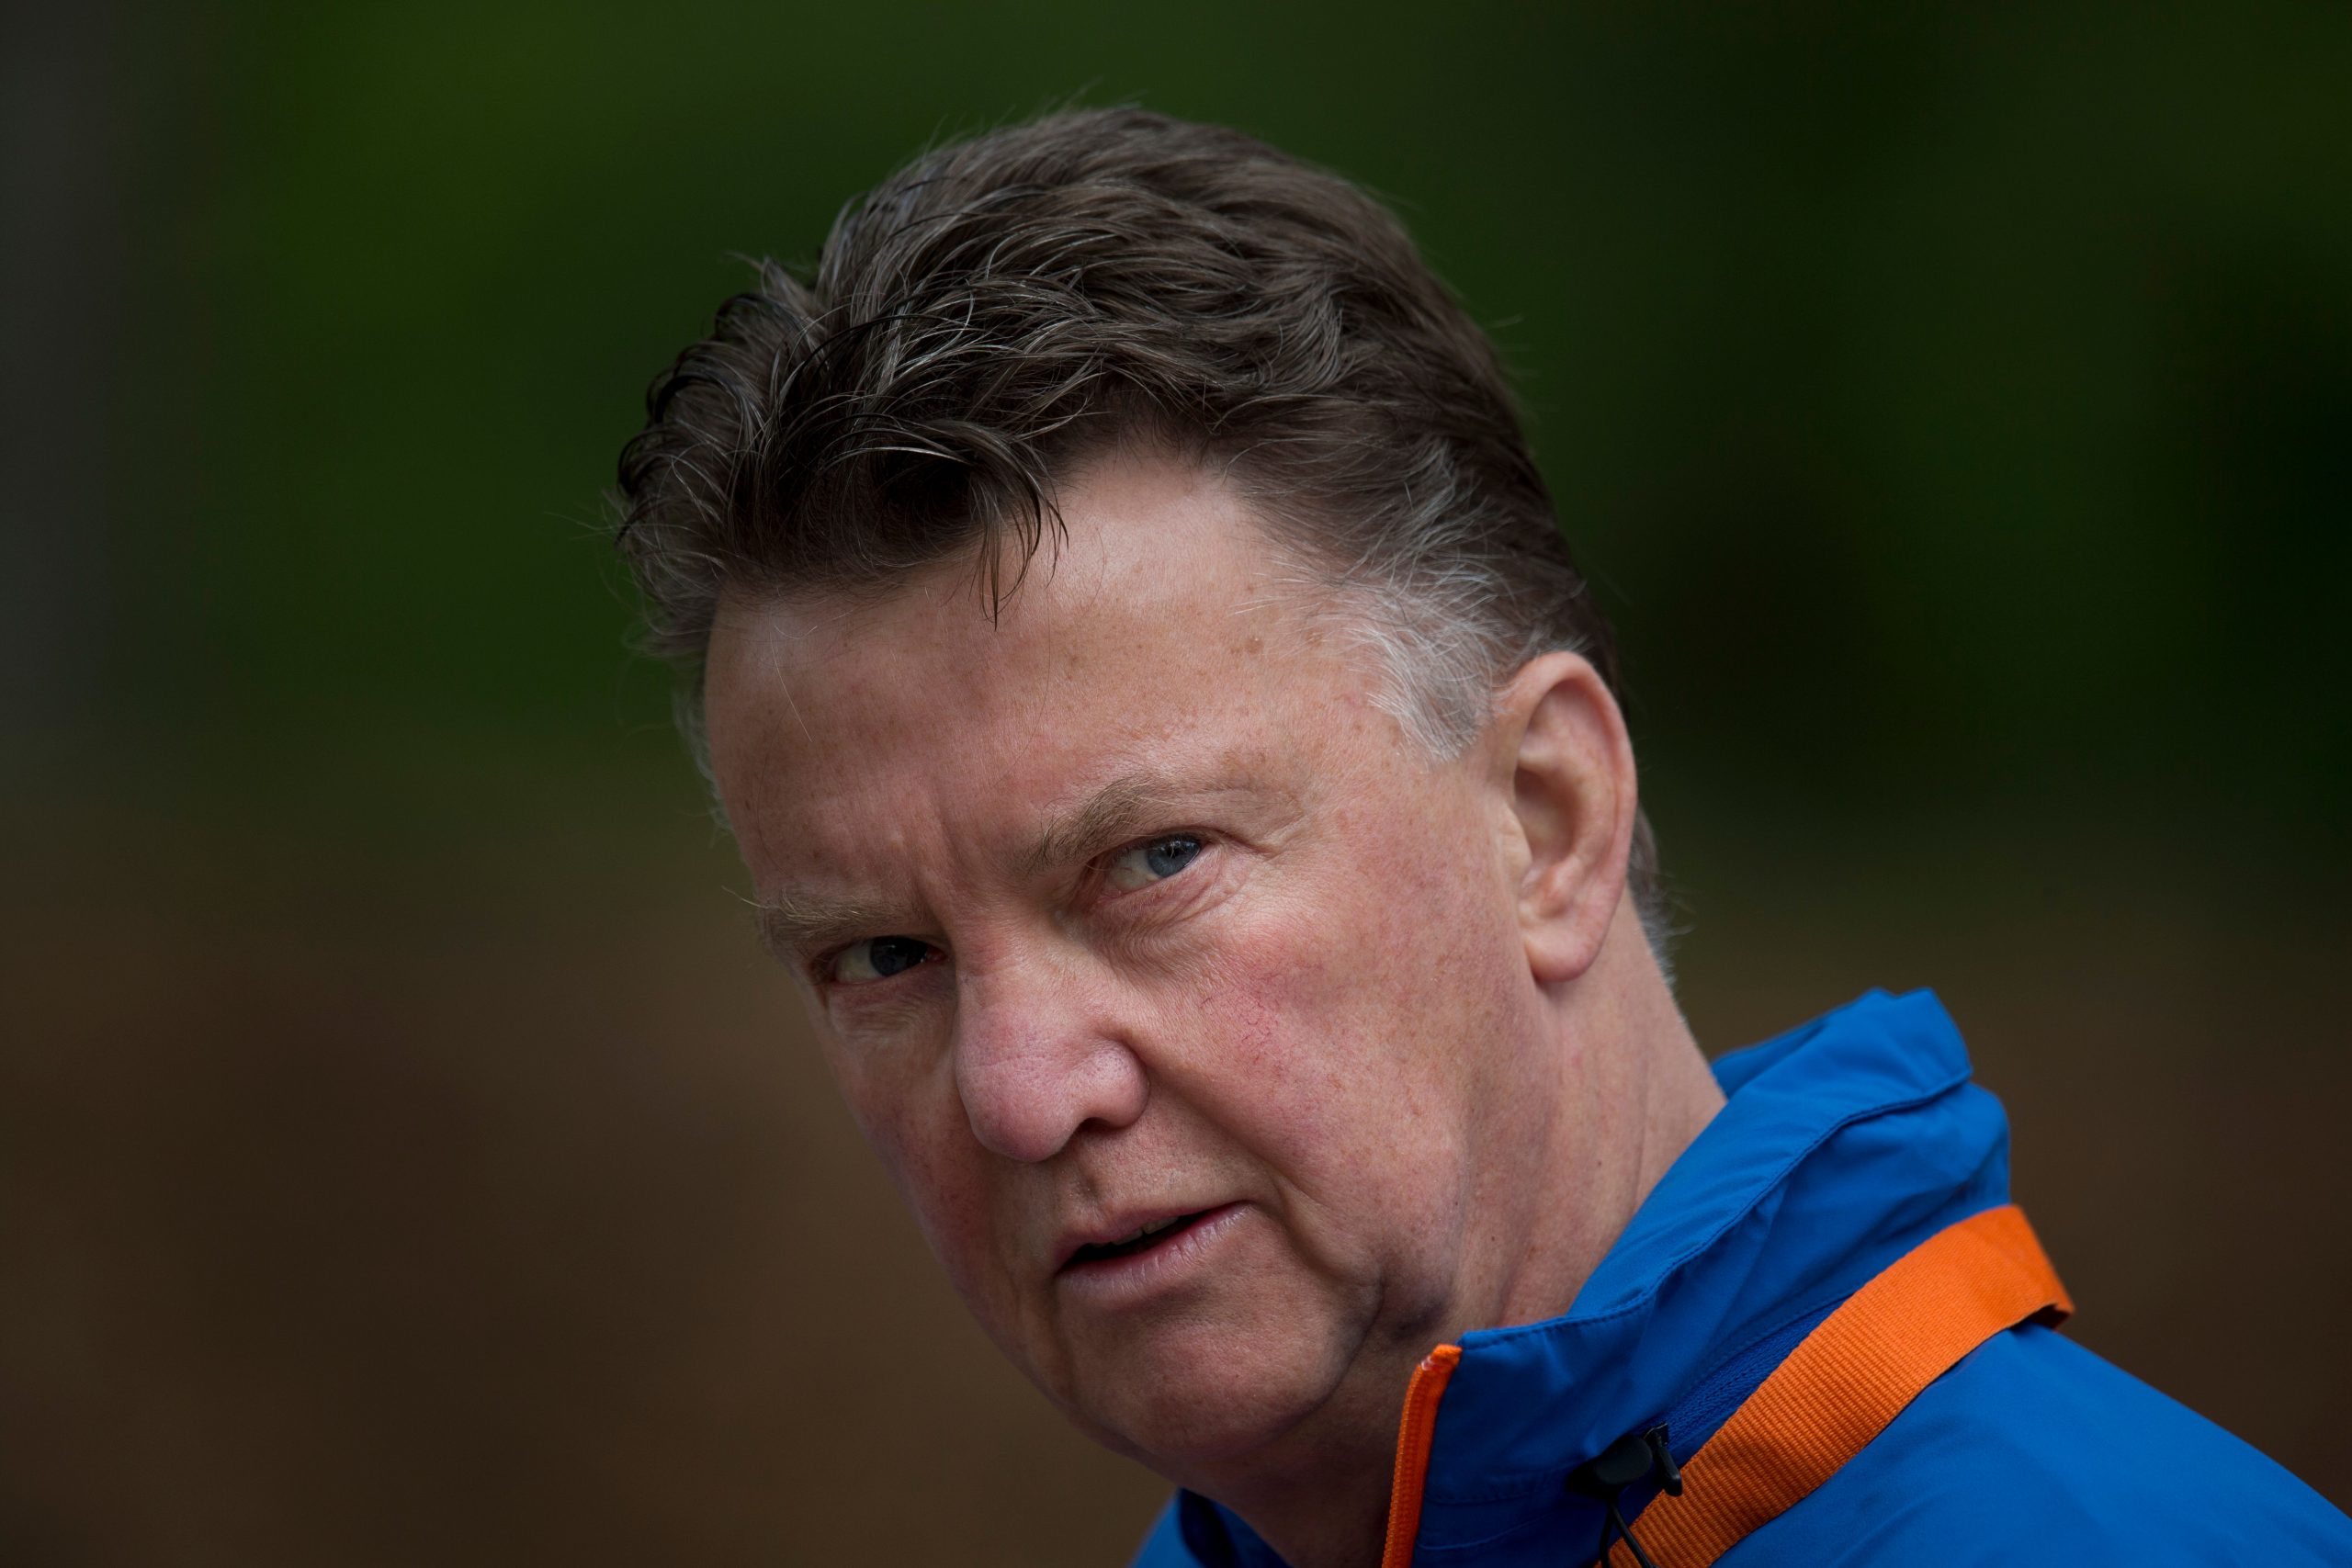 Dutch coach Van Gaal has prostate cancer, plans to lead team at Qatar 2022